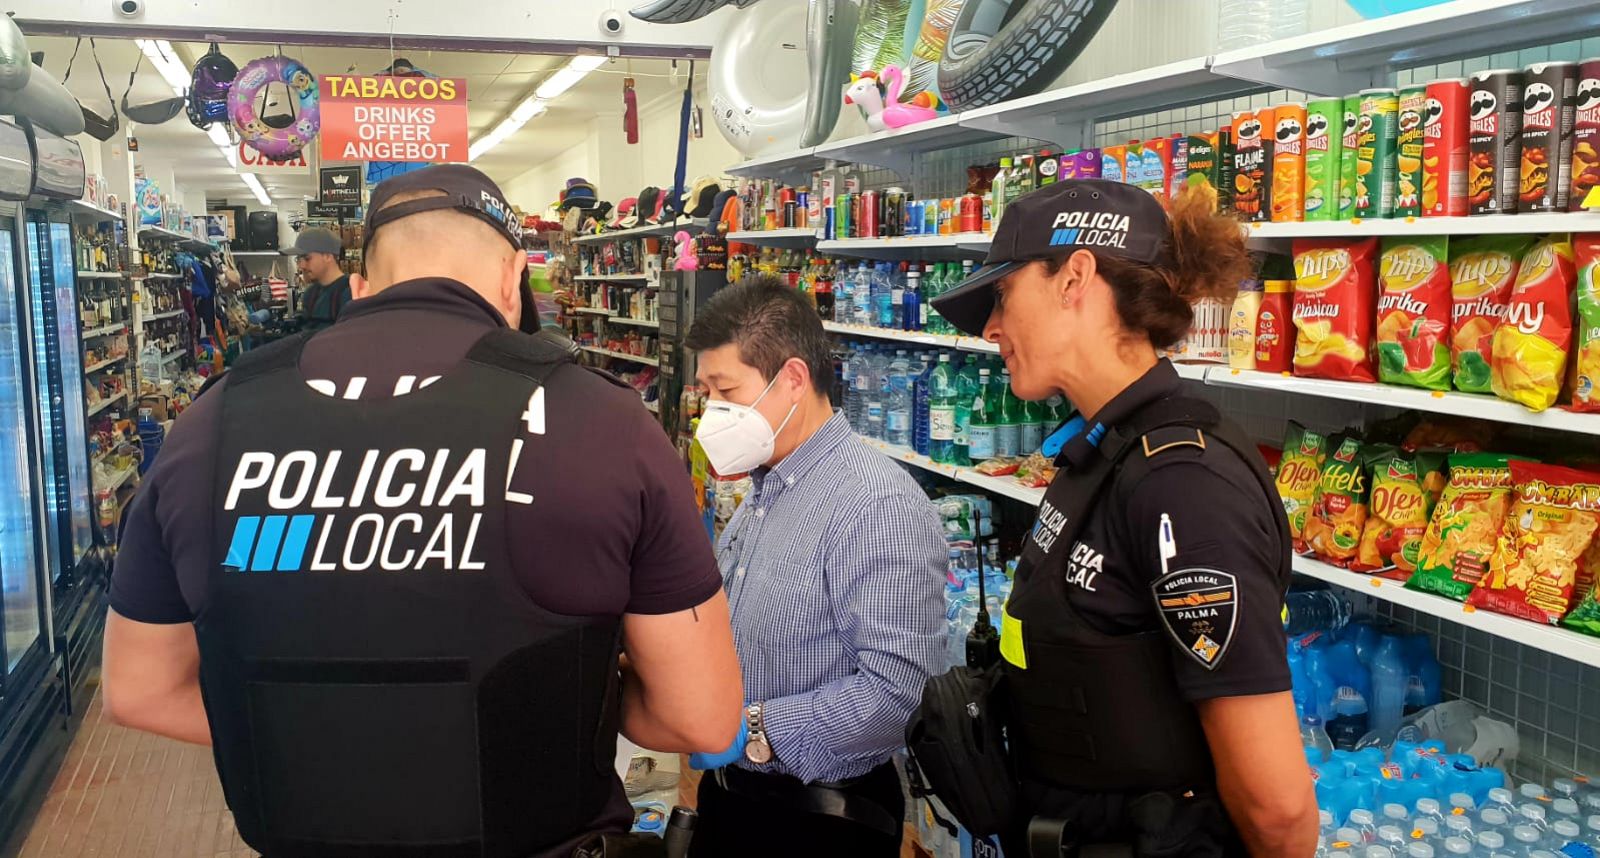 Agents de la policia local de Palma han començat la campanya d'estiu amb informació als locals que venen alcohol